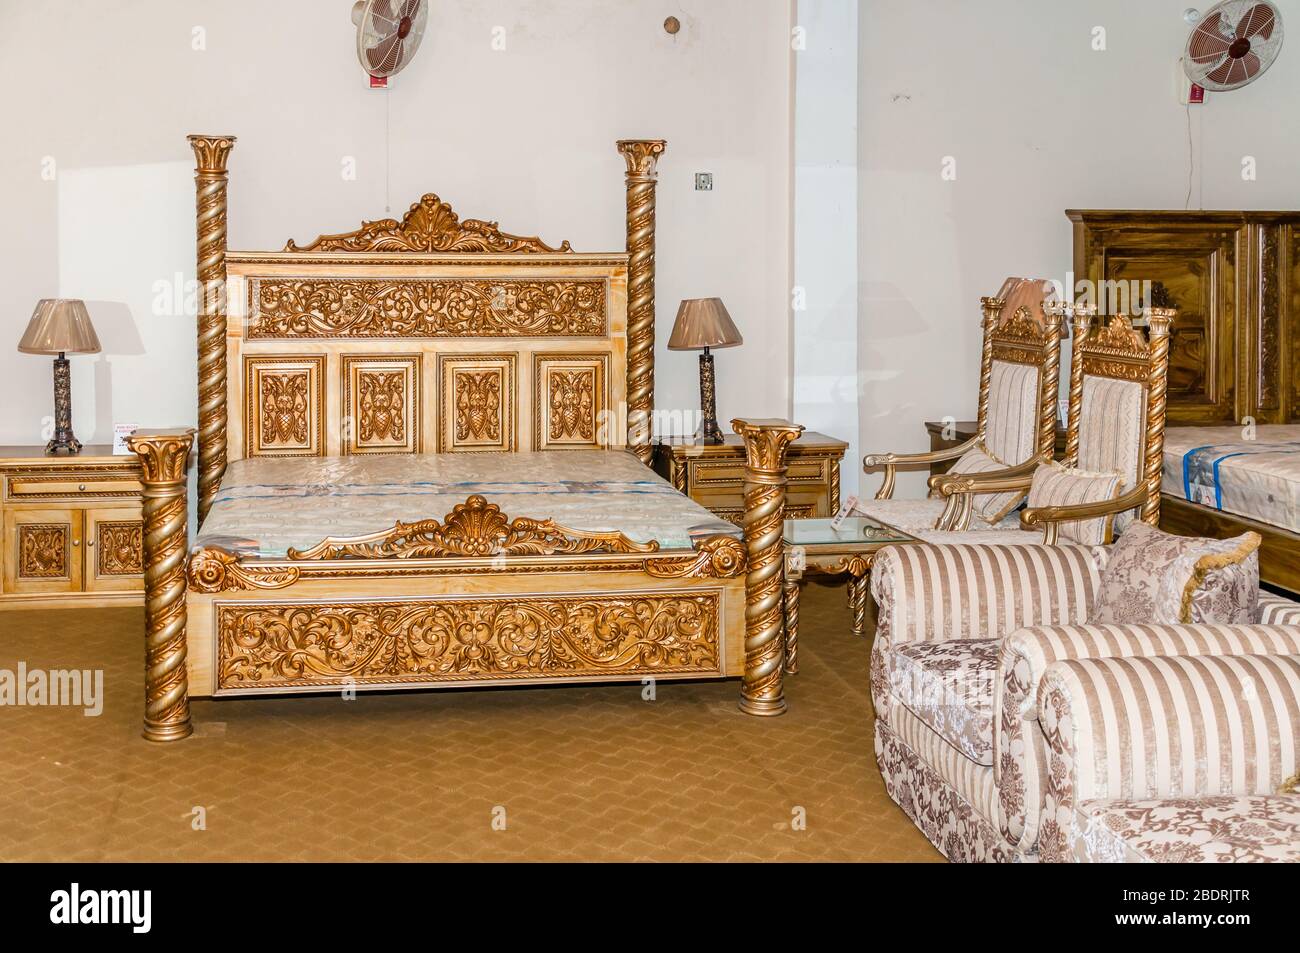 Jhelum, Punjab, Pakistan - 17. Januar 2020: Modernes Schlafzimmer mit King-Seite Doppelbett, mit Kopfteil, Beistelltische, Lampen, Jhelum, Punjab, Pakistan Stockfoto